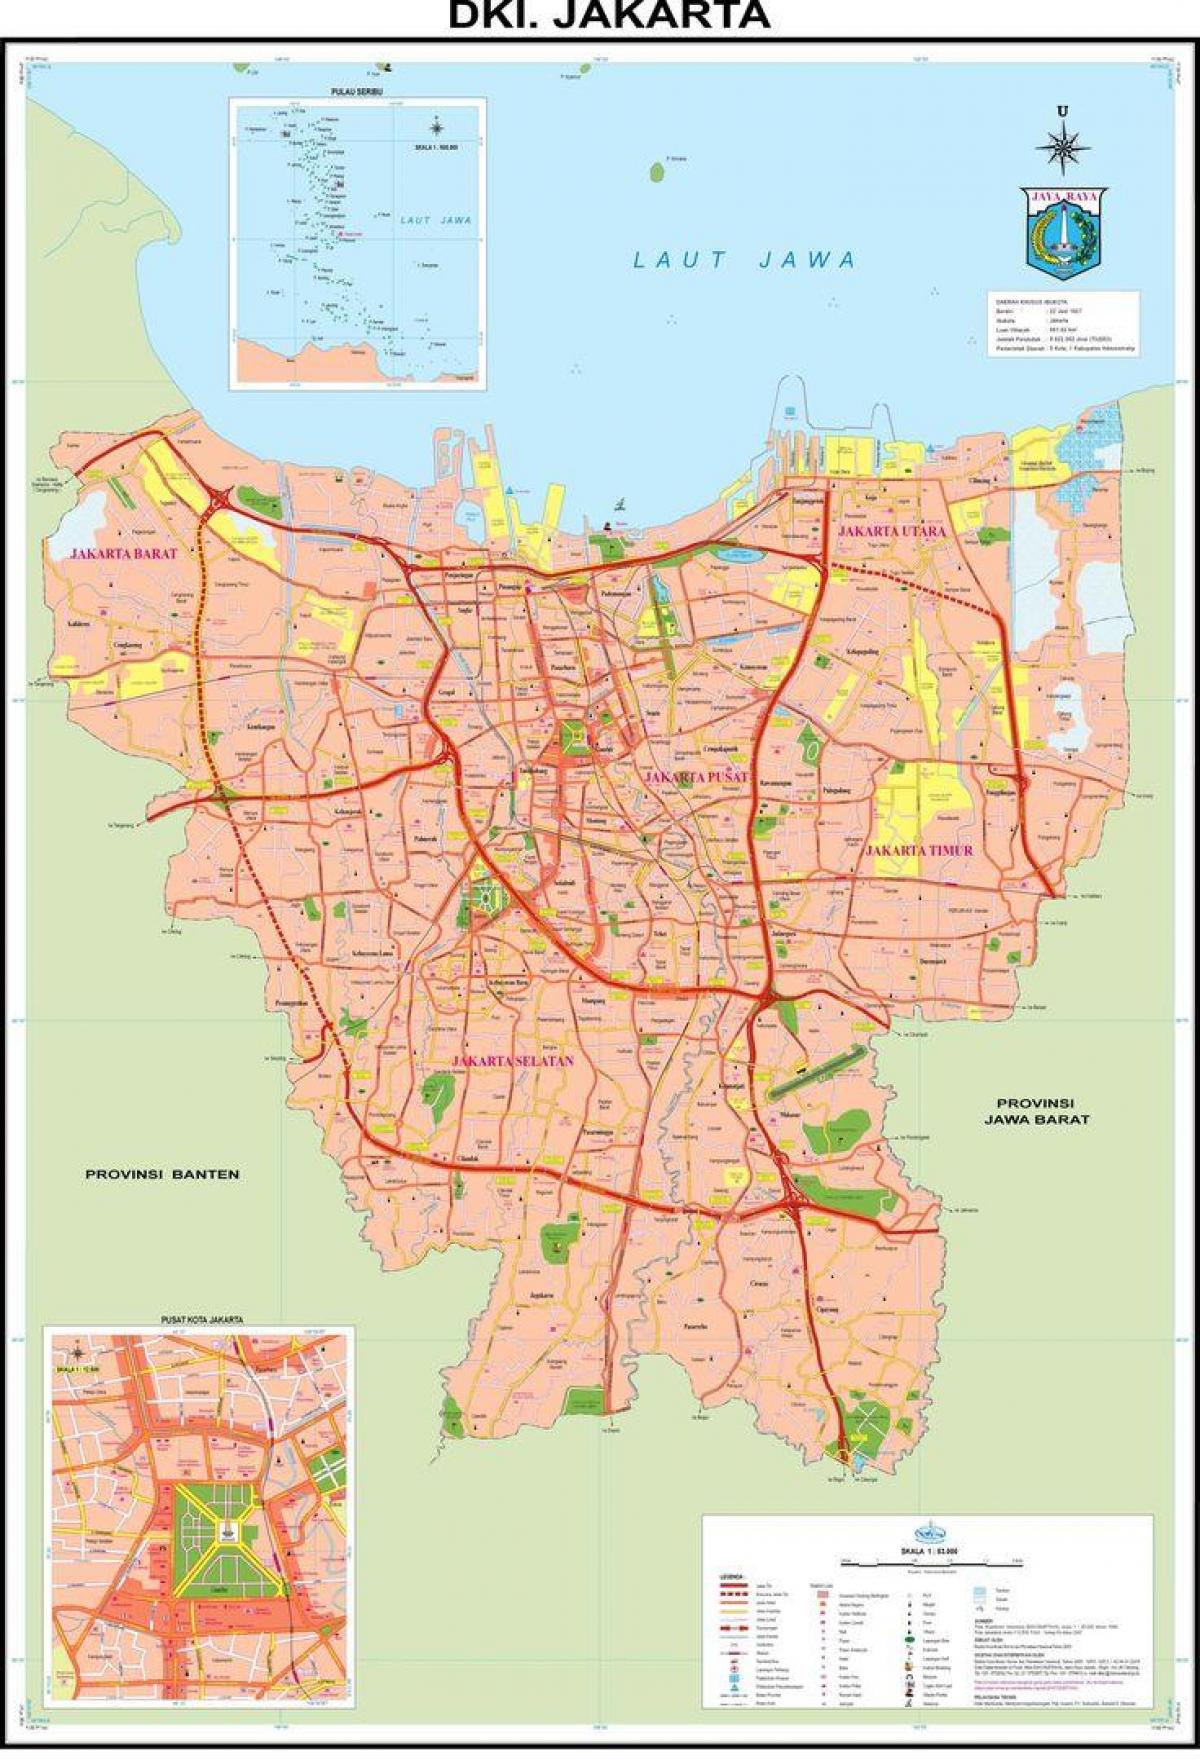 რუკა Jakarta ძველი ქალაქი